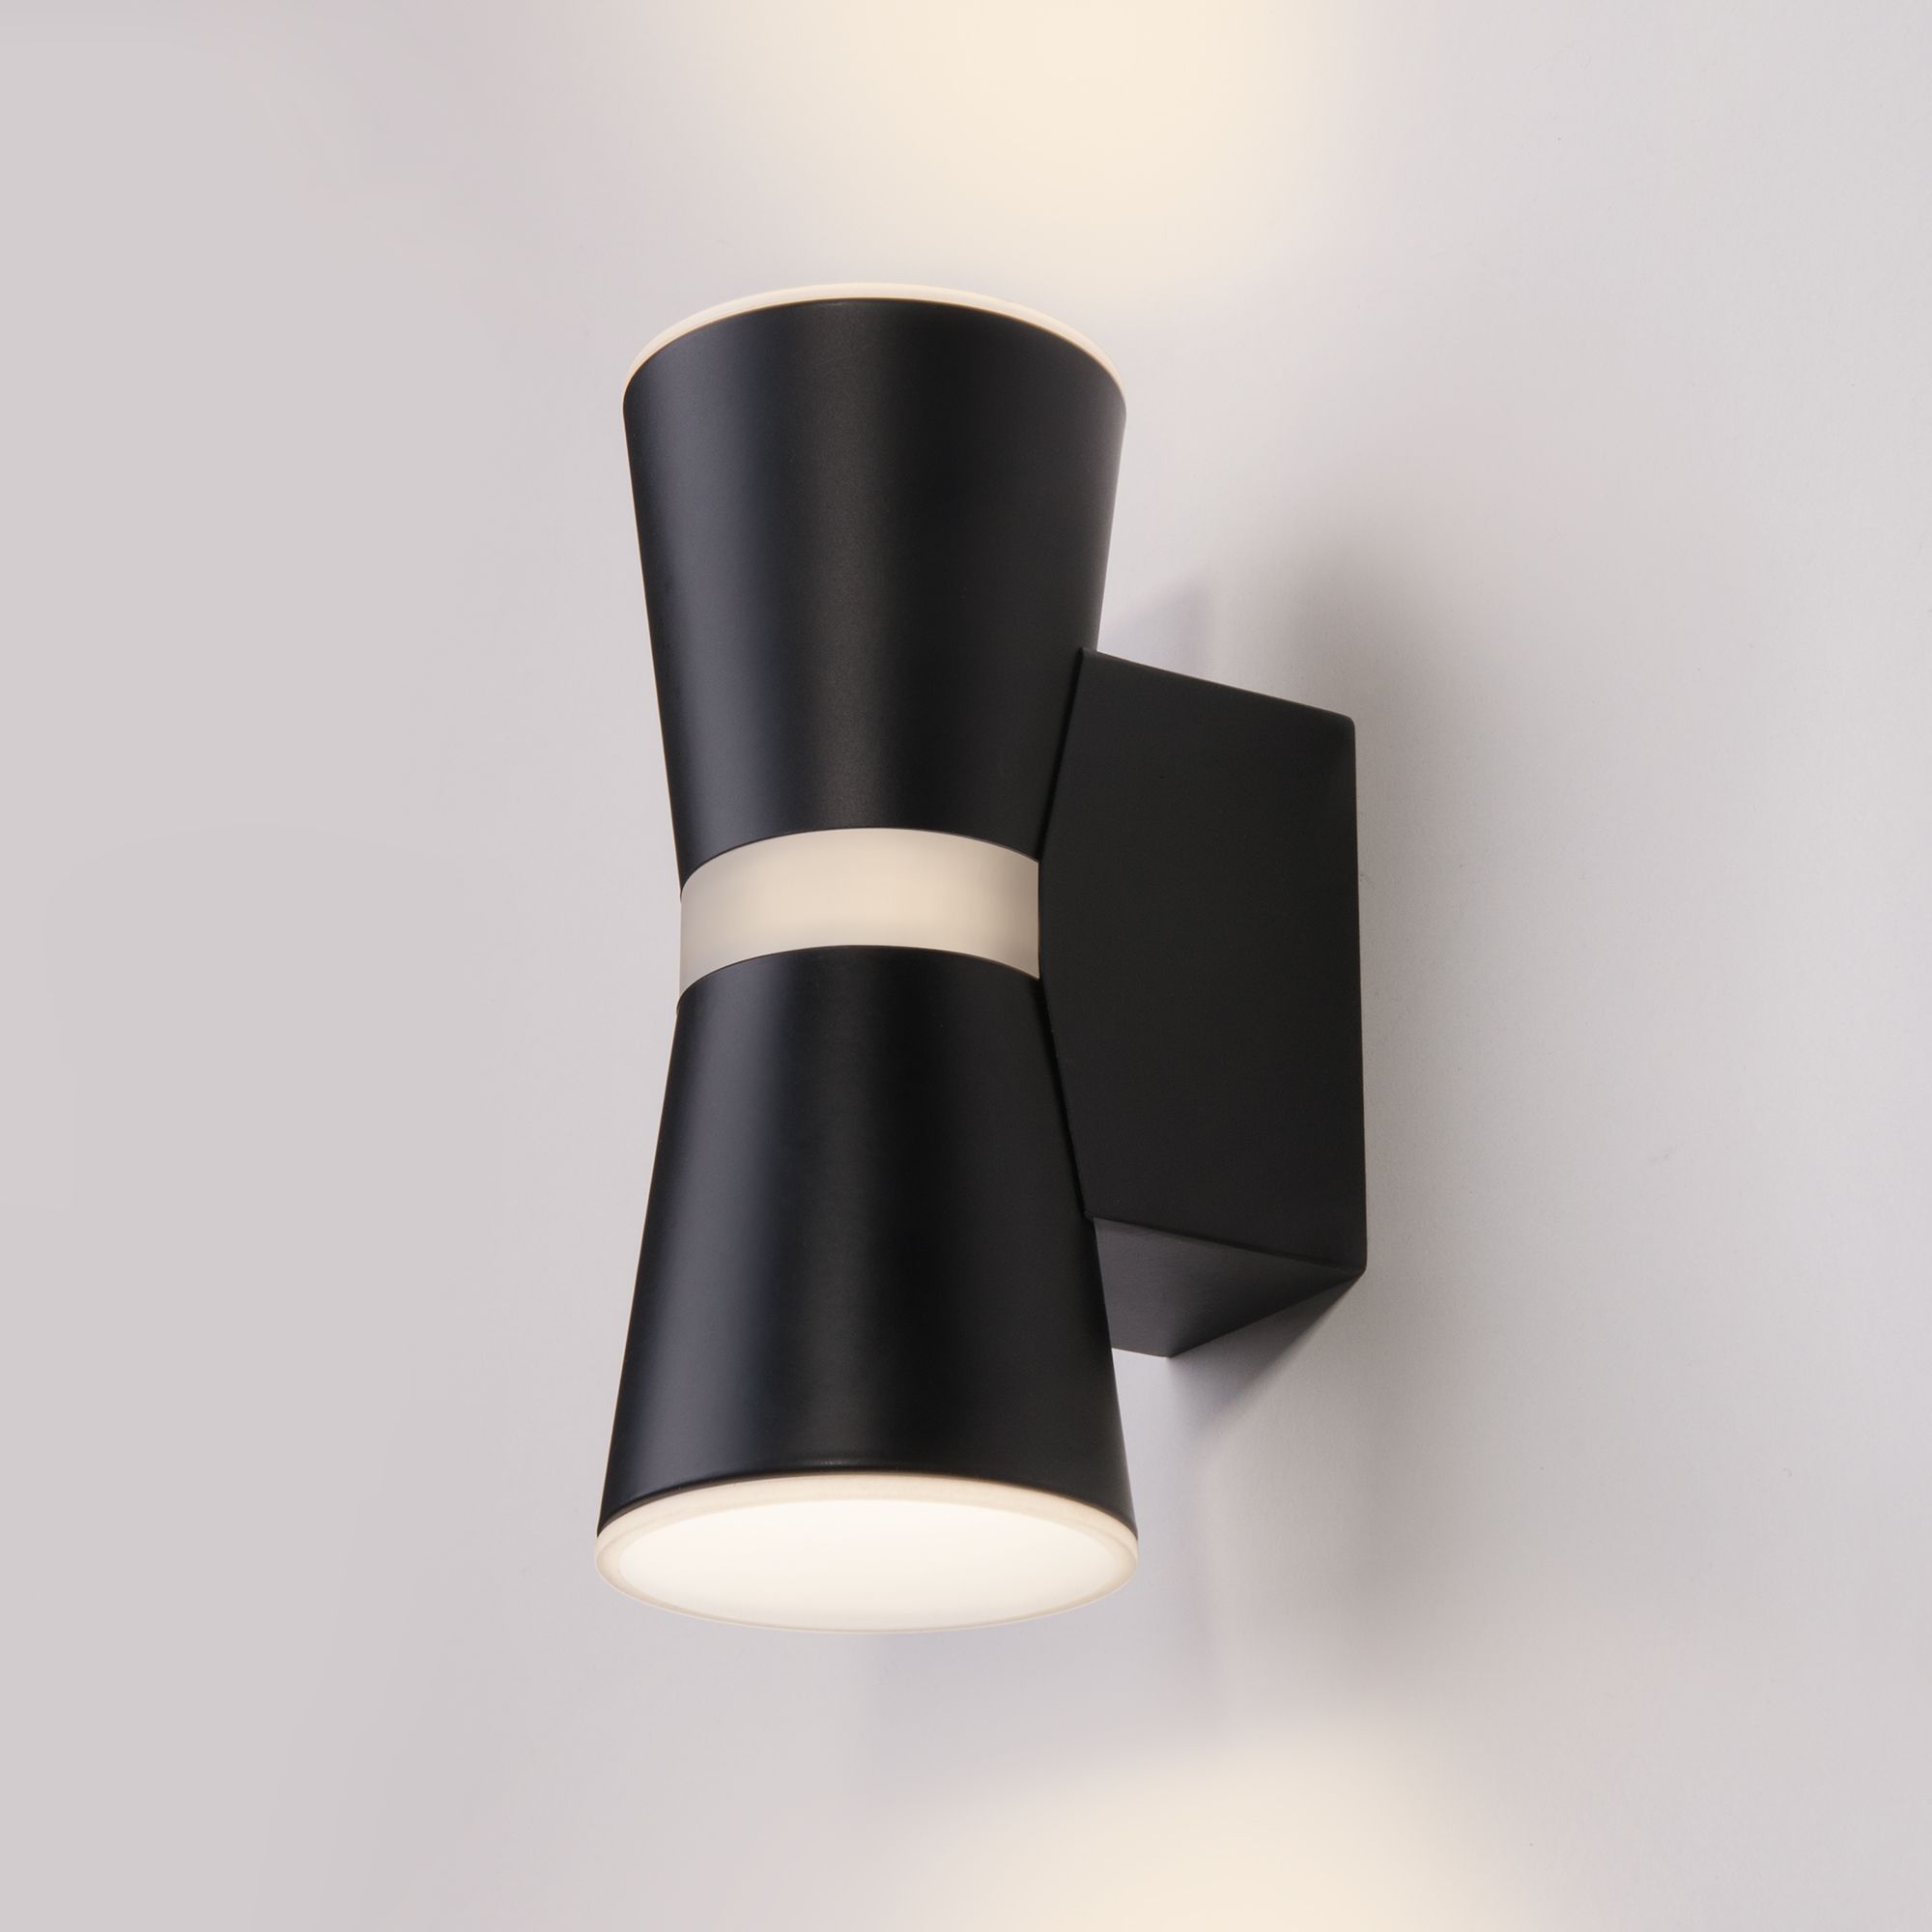 Настенный светодиодный светильник Viare LED Elektrostandard Viare MRL LED 1003 черный. Фото 1